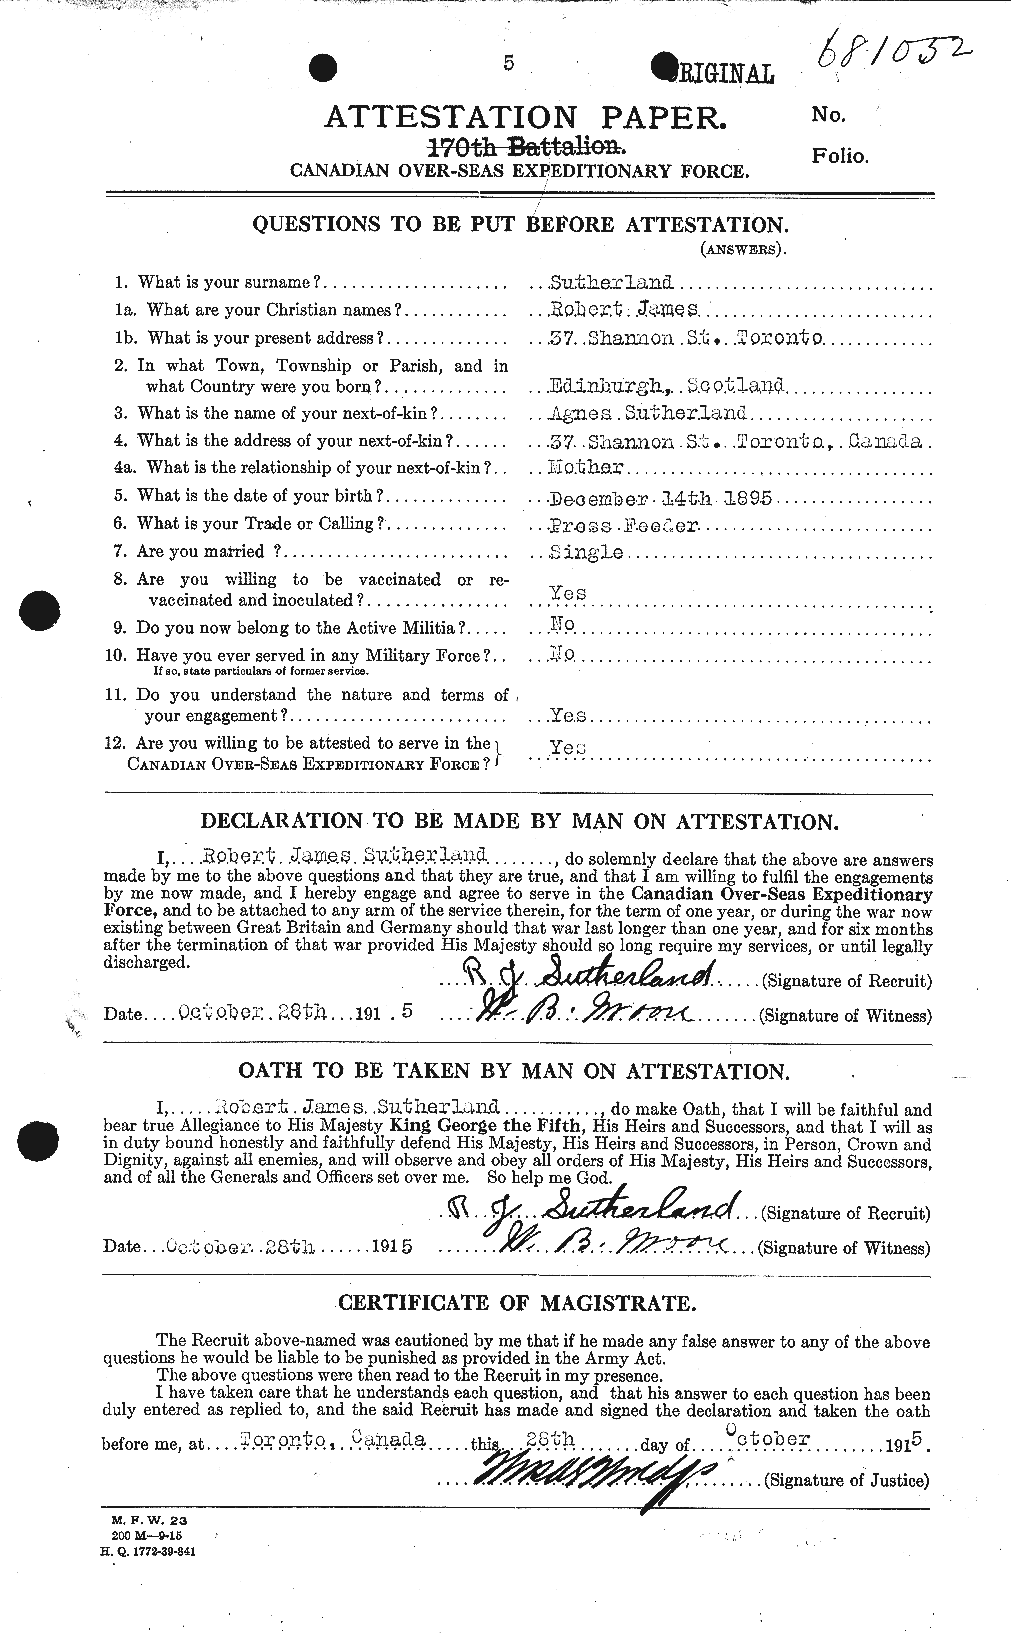 Dossiers du Personnel de la Première Guerre mondiale - CEC 126791a